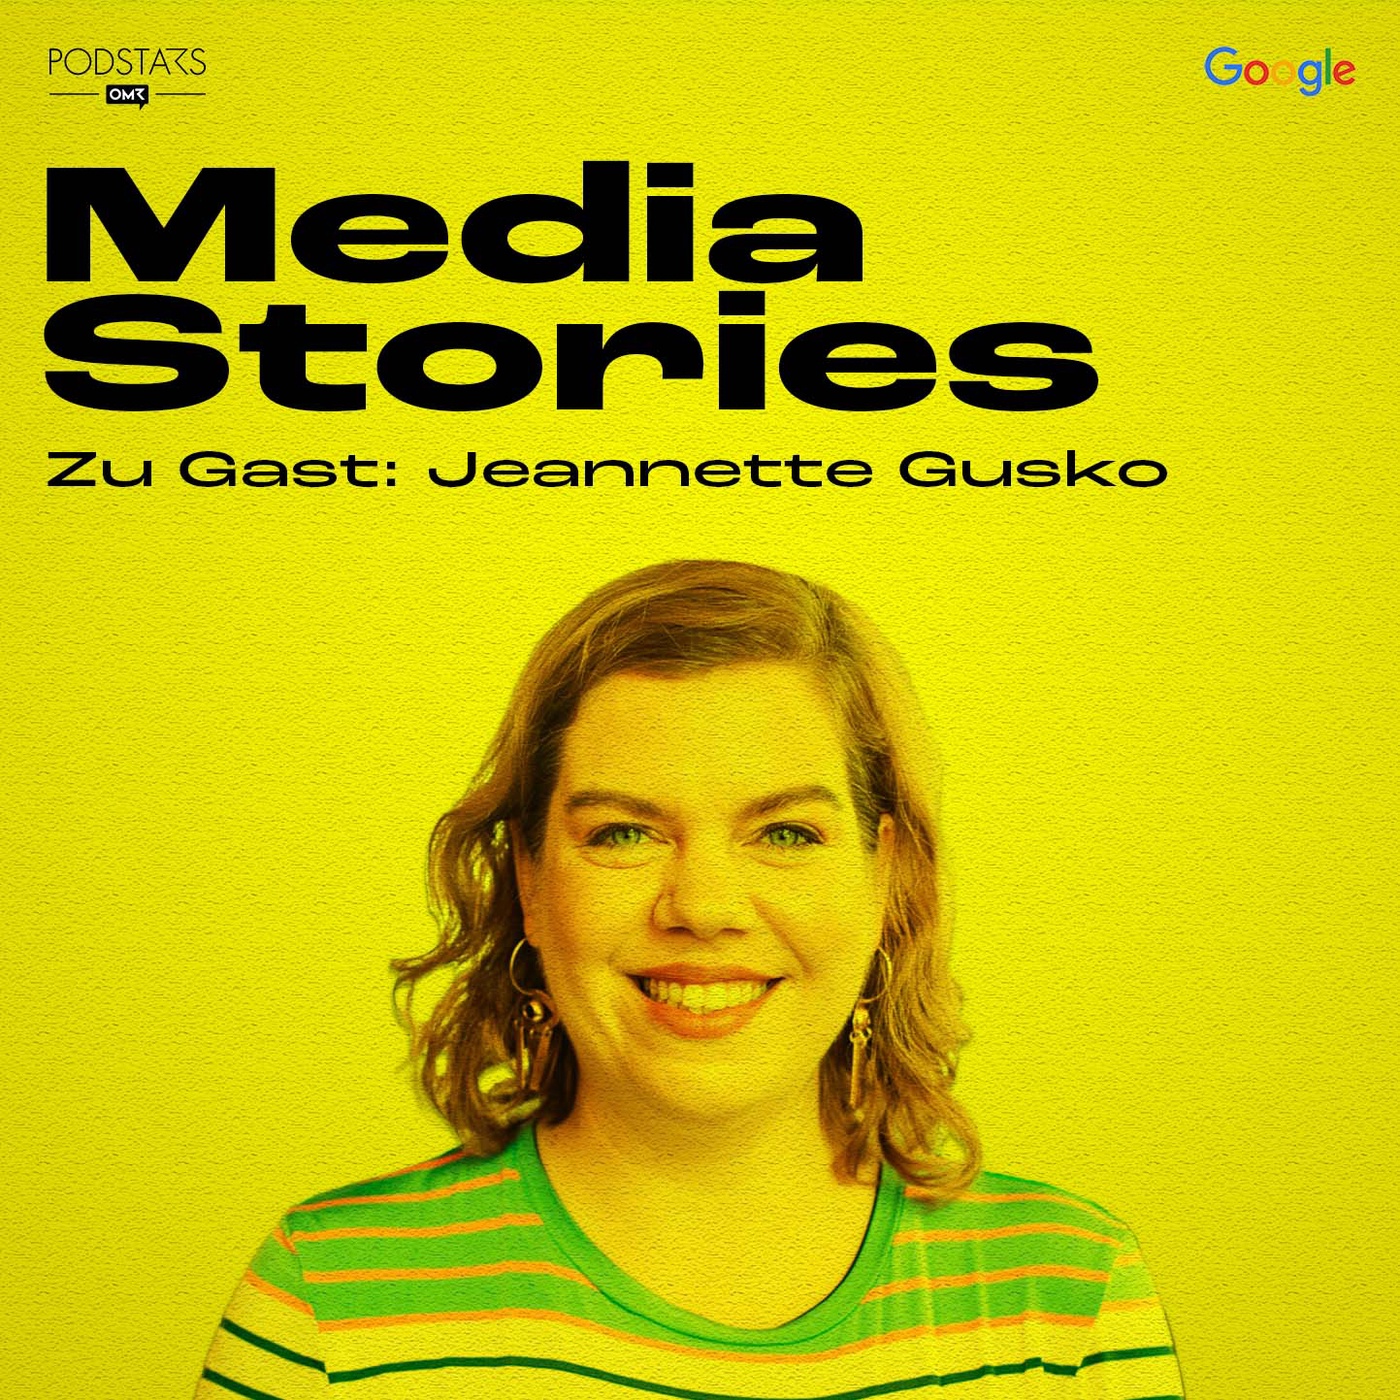 Die Bedeutung des Investigativjournalismus in der Krise - mit Jeannette Gusko von CORRECTIV